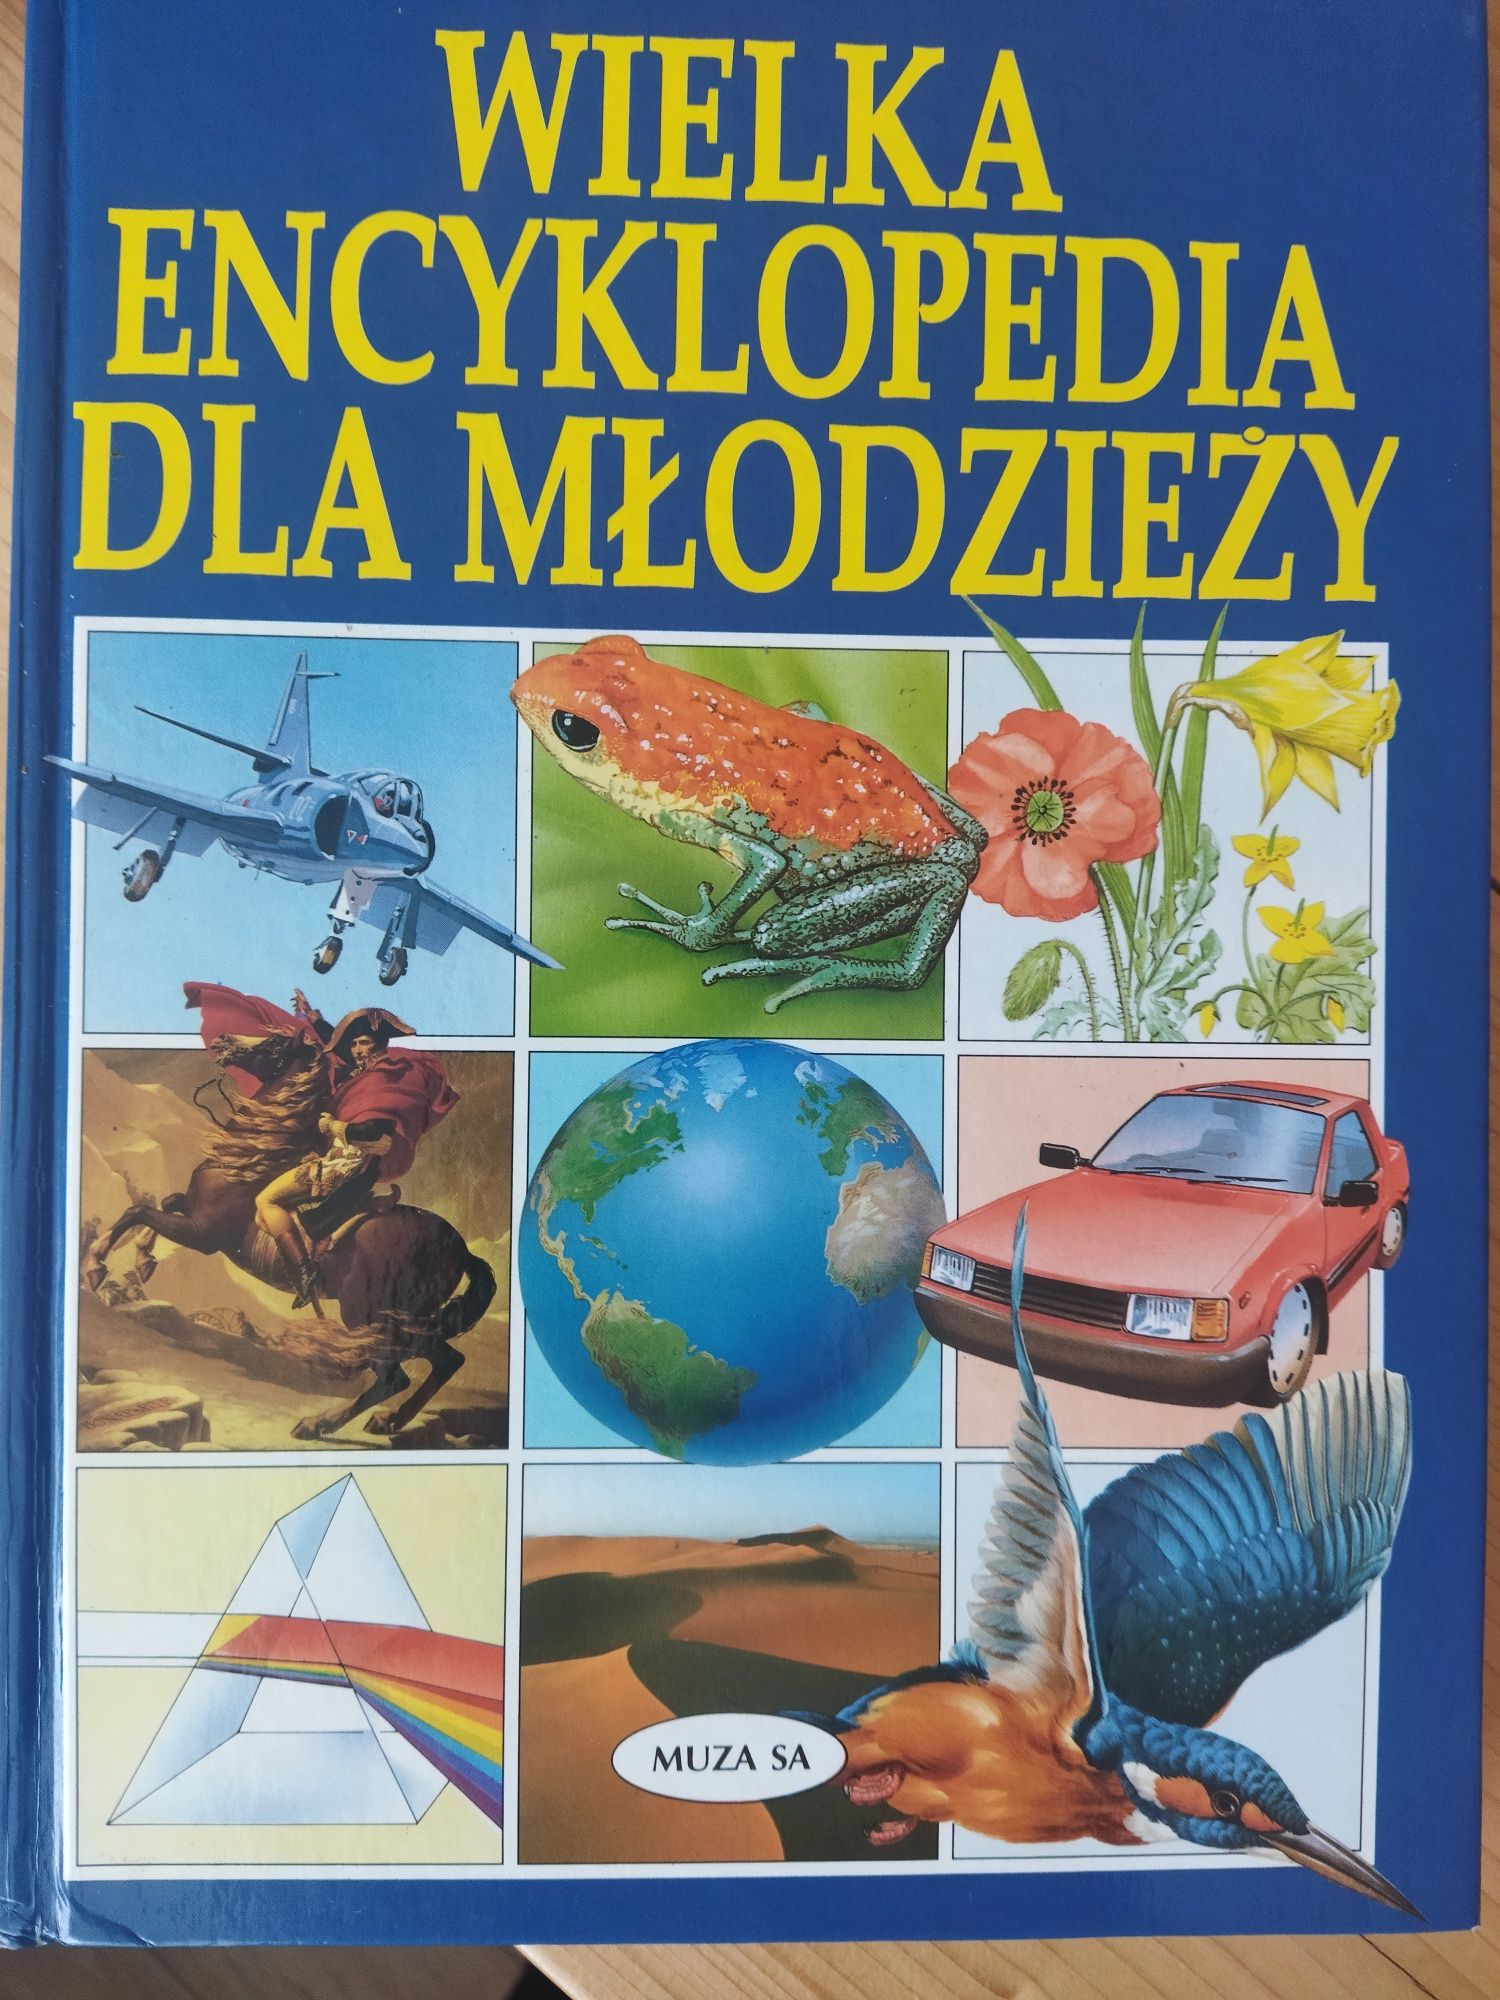 Wielka encyklopedia dla dzieci i młodzieży 5 tomów